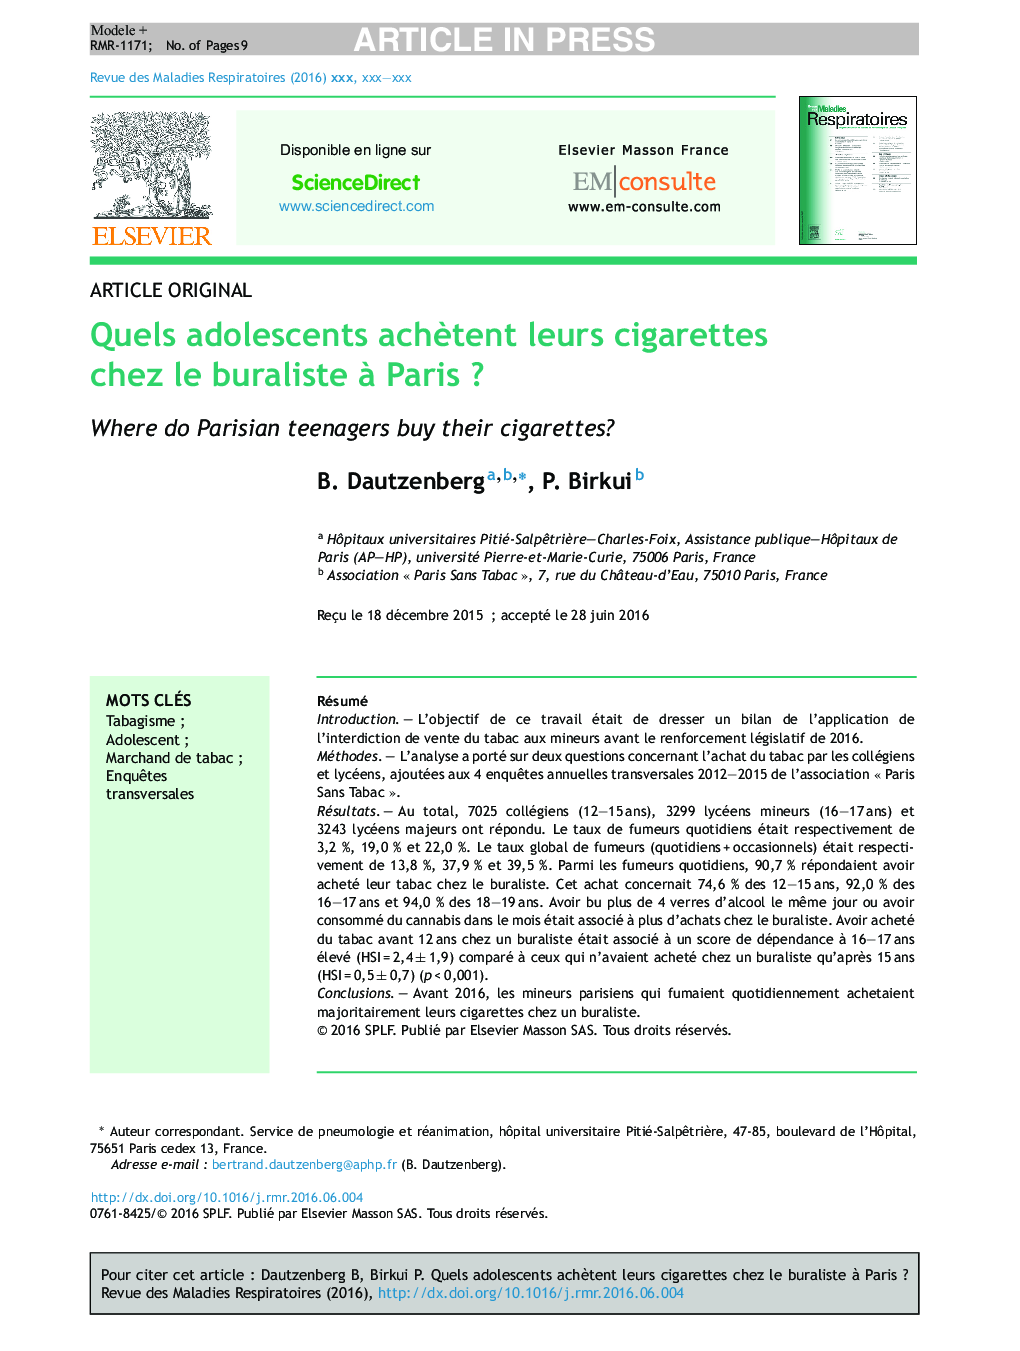 Quels adolescents achÃ¨tent leurs cigarettes chez le buraliste Ã  ParisÂ ?